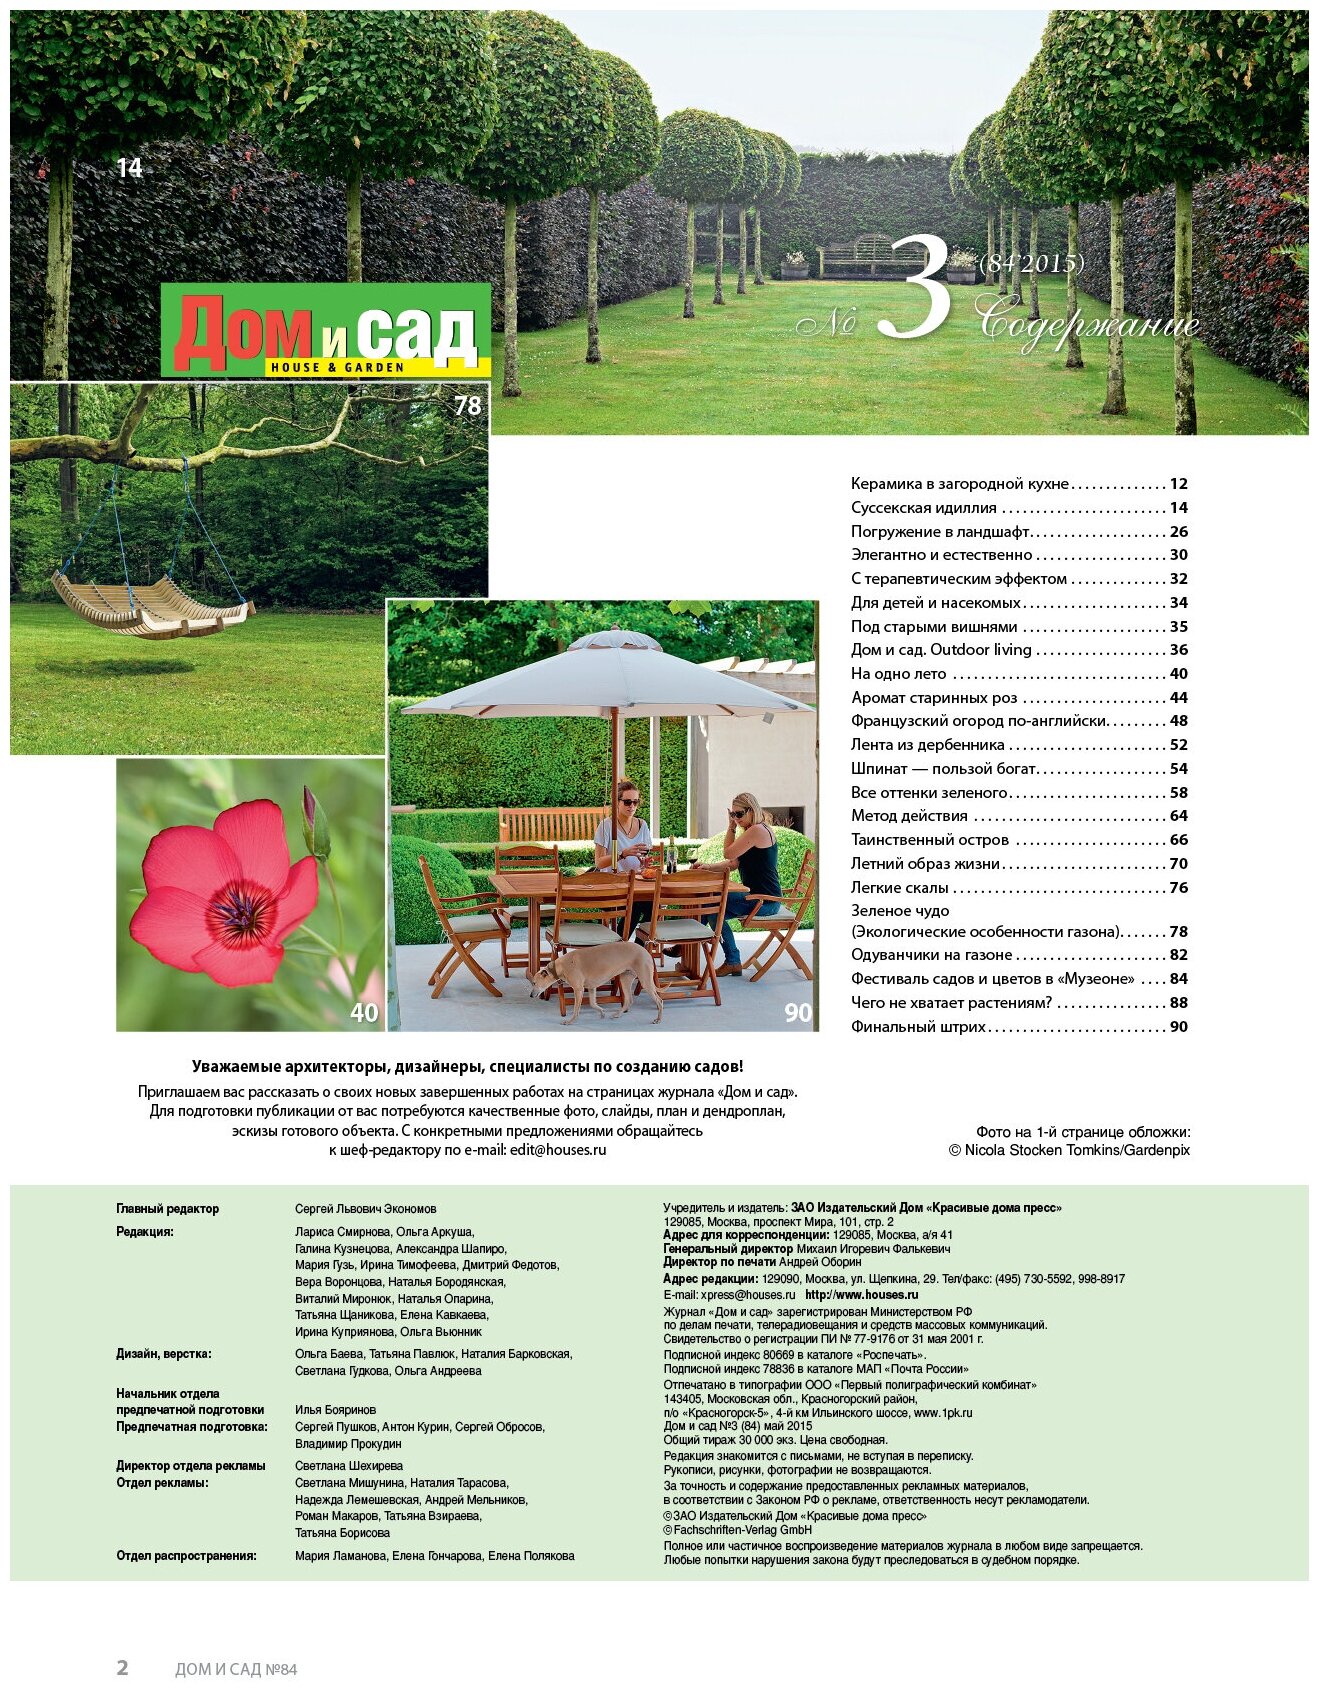 Журнал Дом и сад №3 (84) 2015